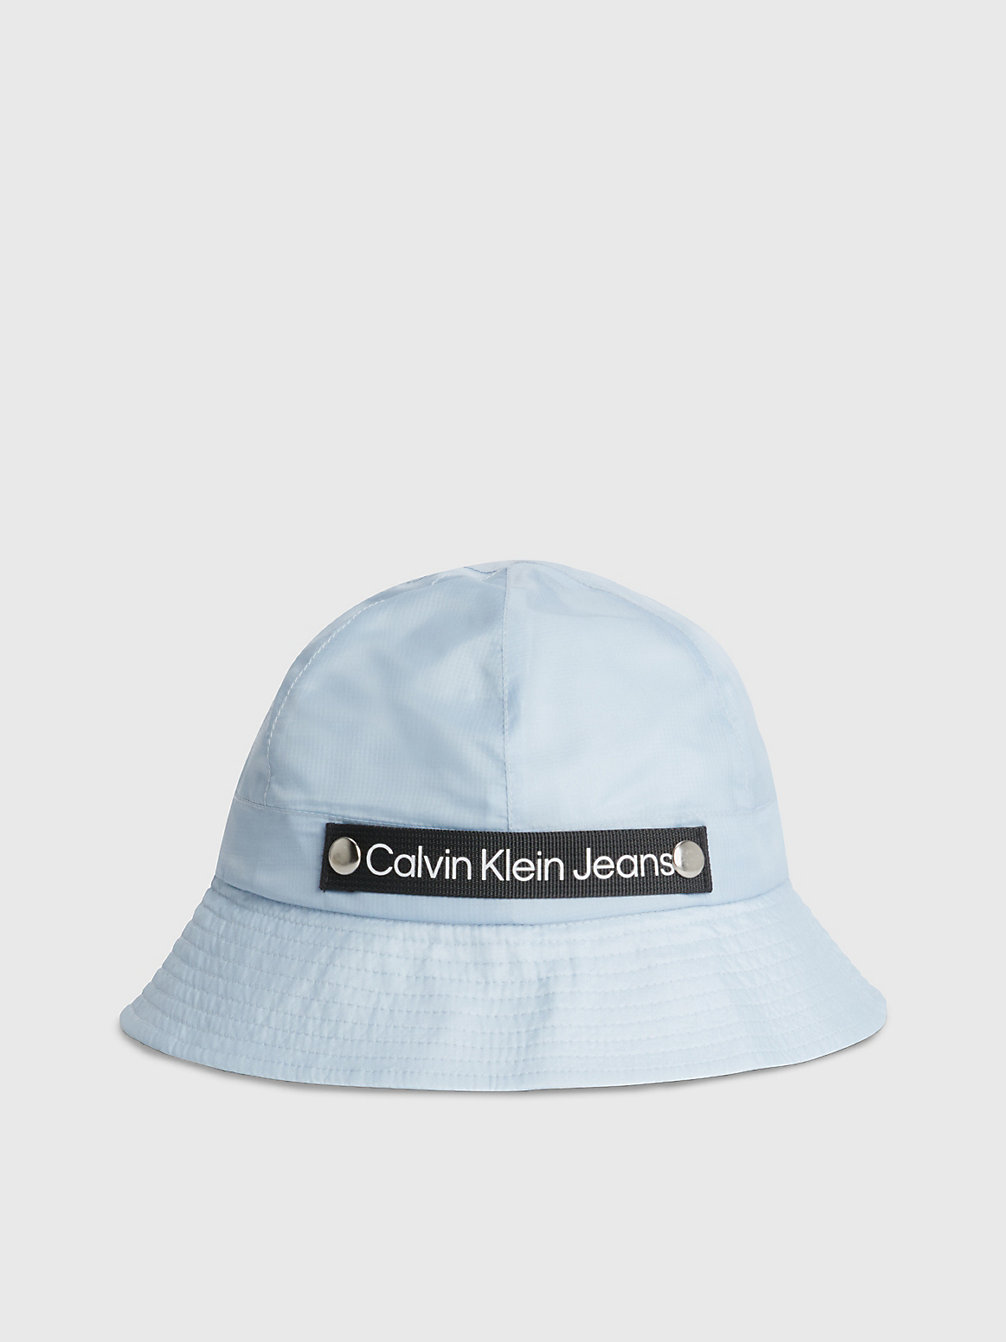 KEEPSAKE BLUE > Dziecięcy Kapelusz Typu Bucket Hat Z Logo > undefined kids unisex - Calvin Klein